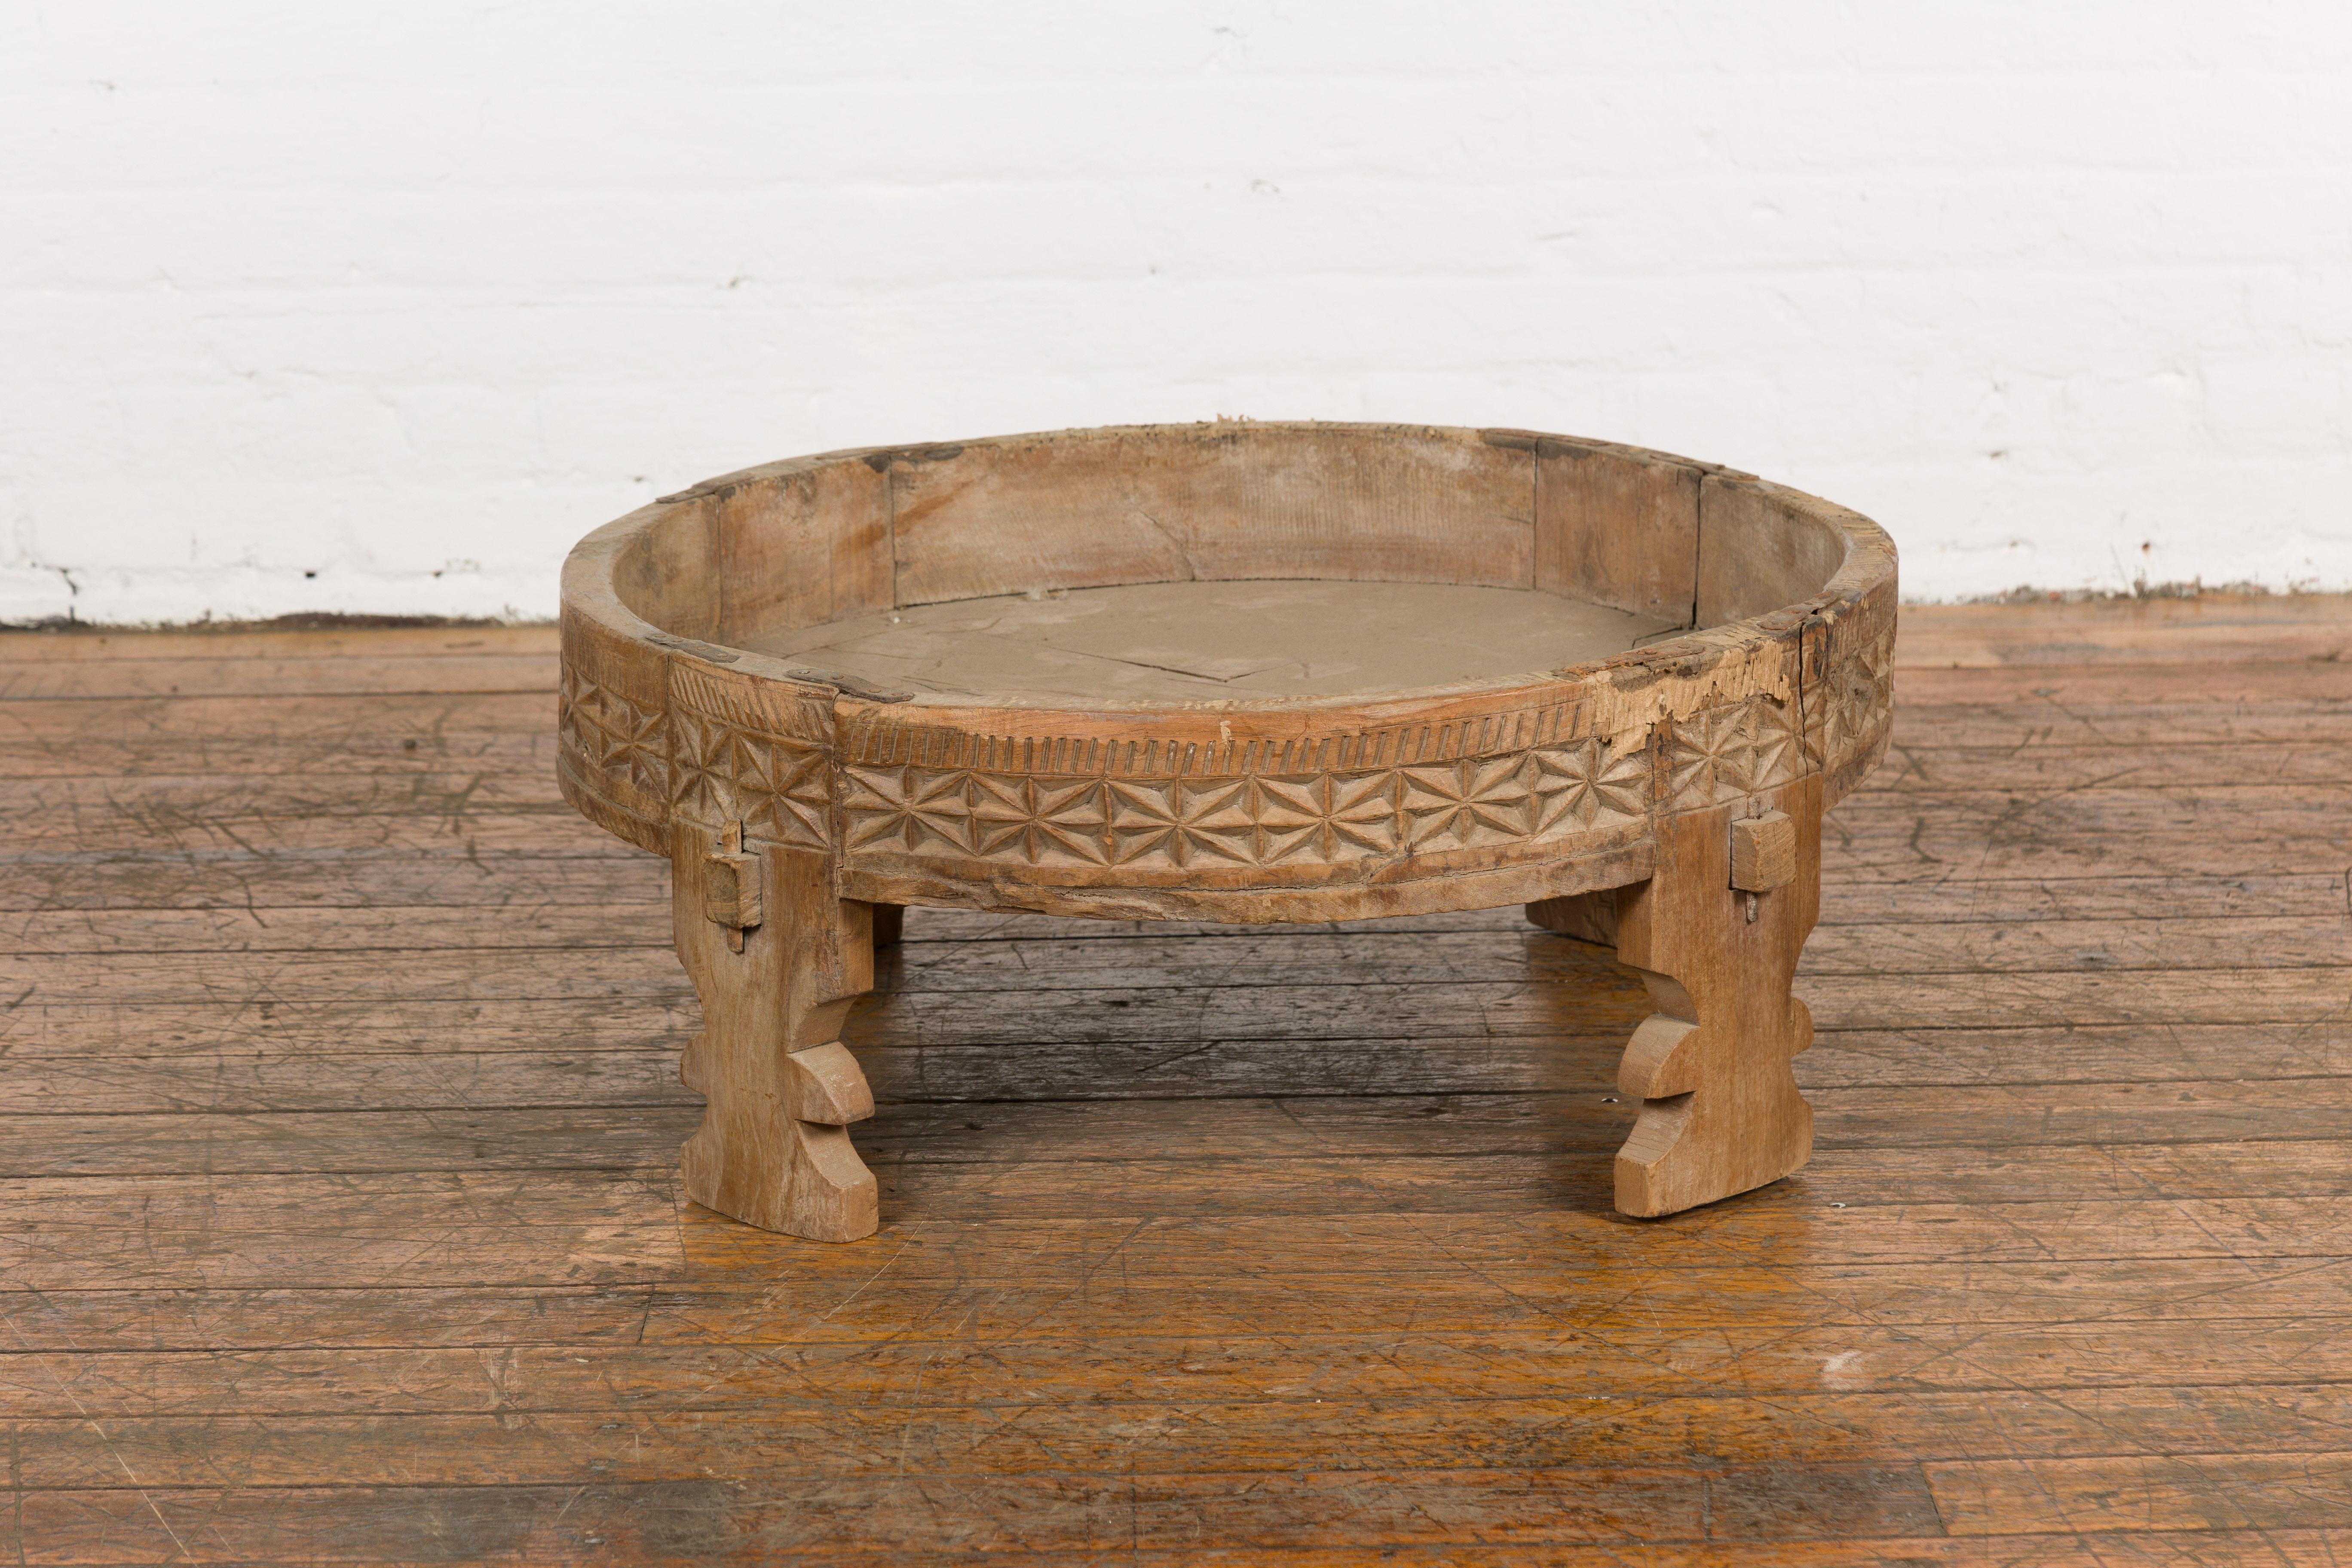 Table de broyeur Chakki rustique d'Inde tribale du début du 20e siècle avec des motifs géométriques sculptés à la main, des pieds sculptés et une patine vieillie. Créée en Inde dans les premières années du 20e siècle, cette table de broyage est